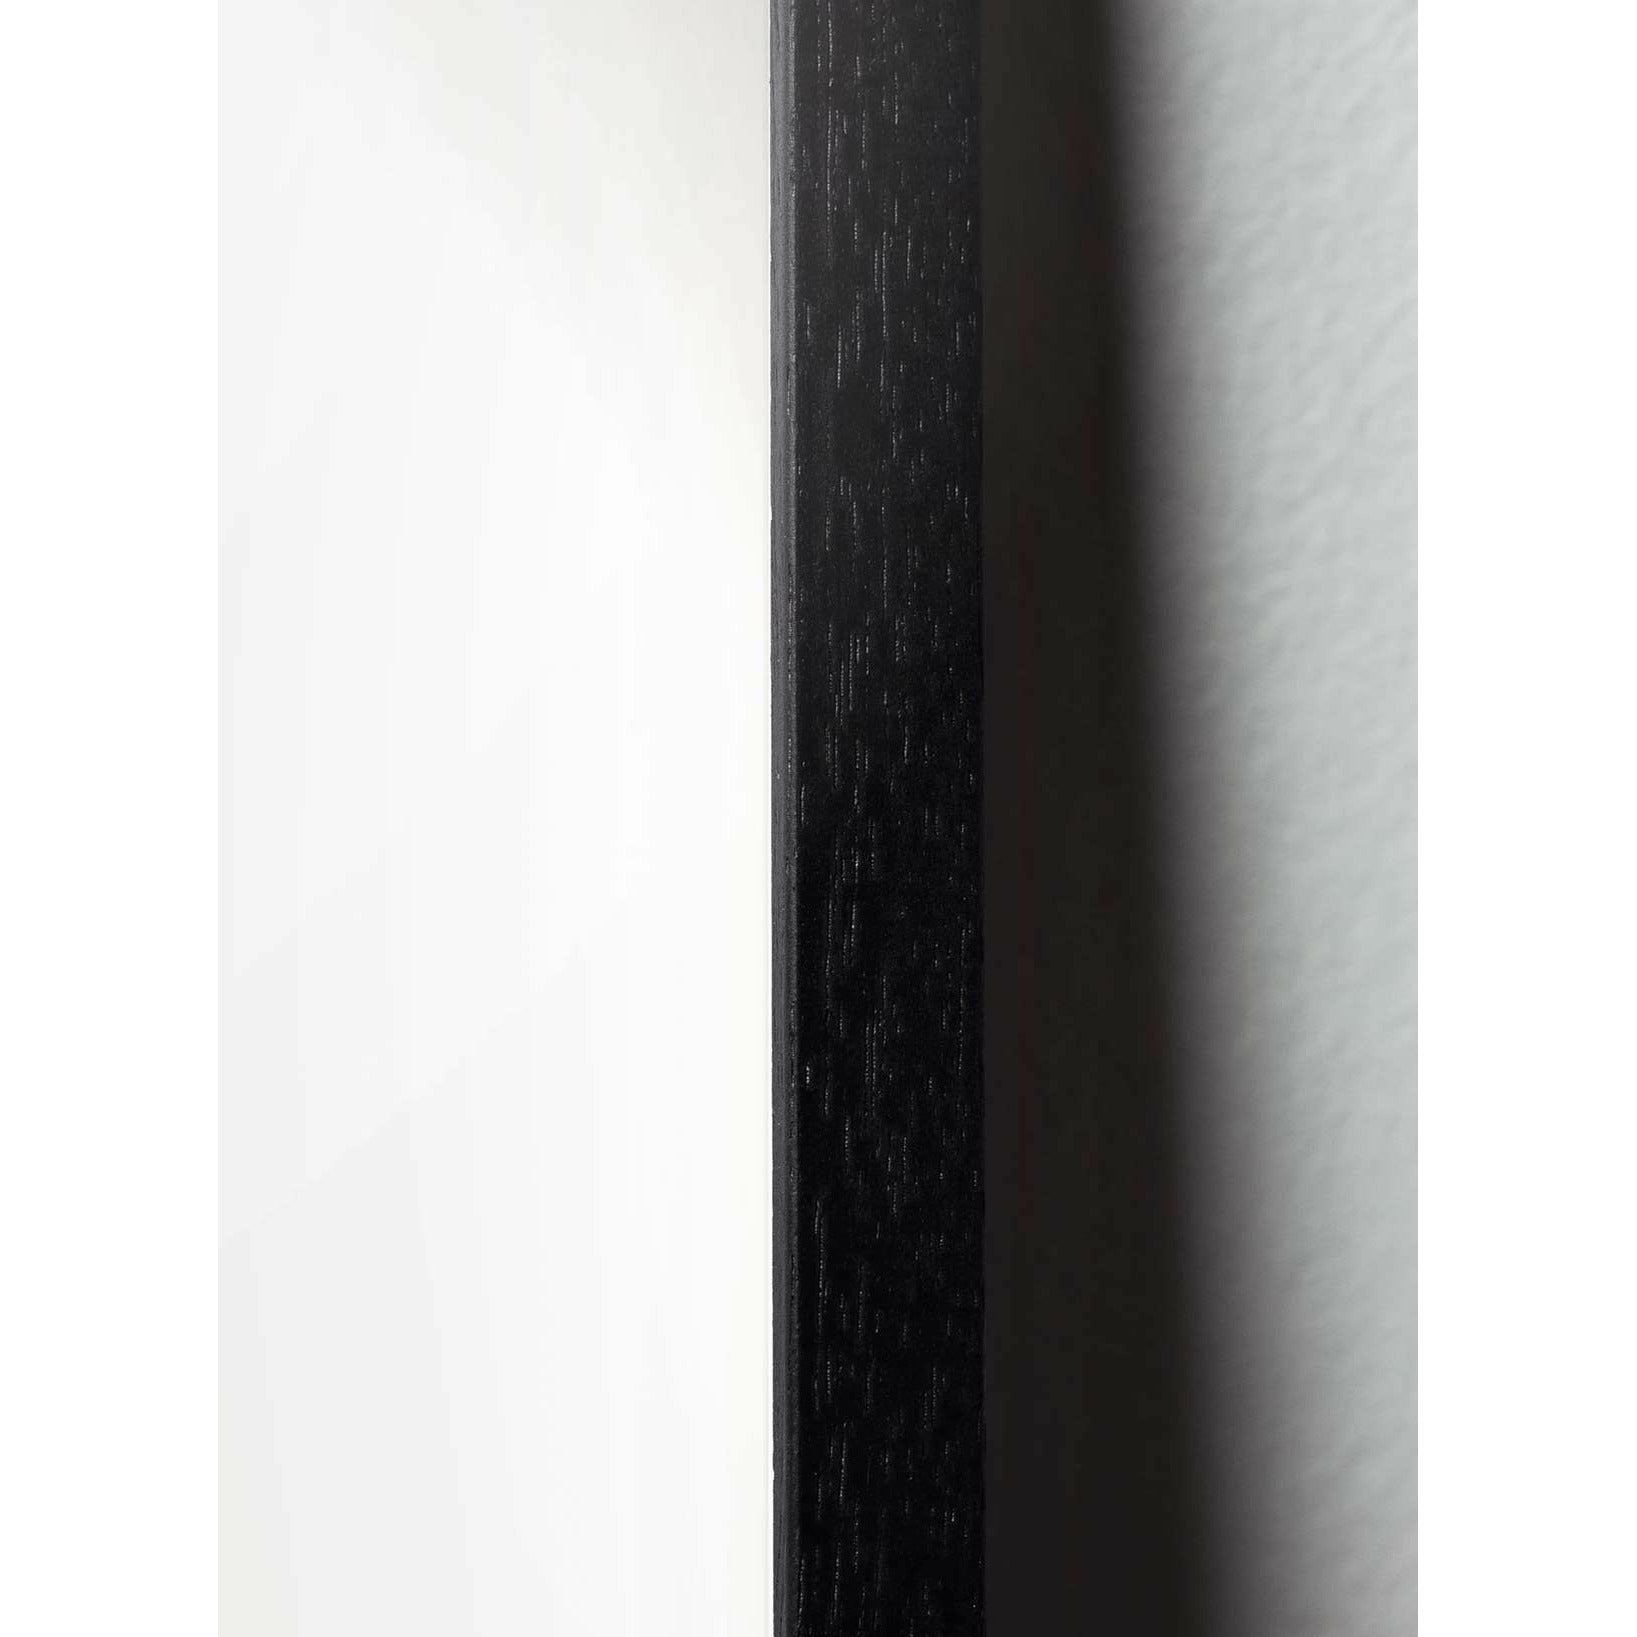 Brainchild Släpp klassisk affisch, ram i svart lackerat trä 70x100 cm, sandfärgad bakgrund